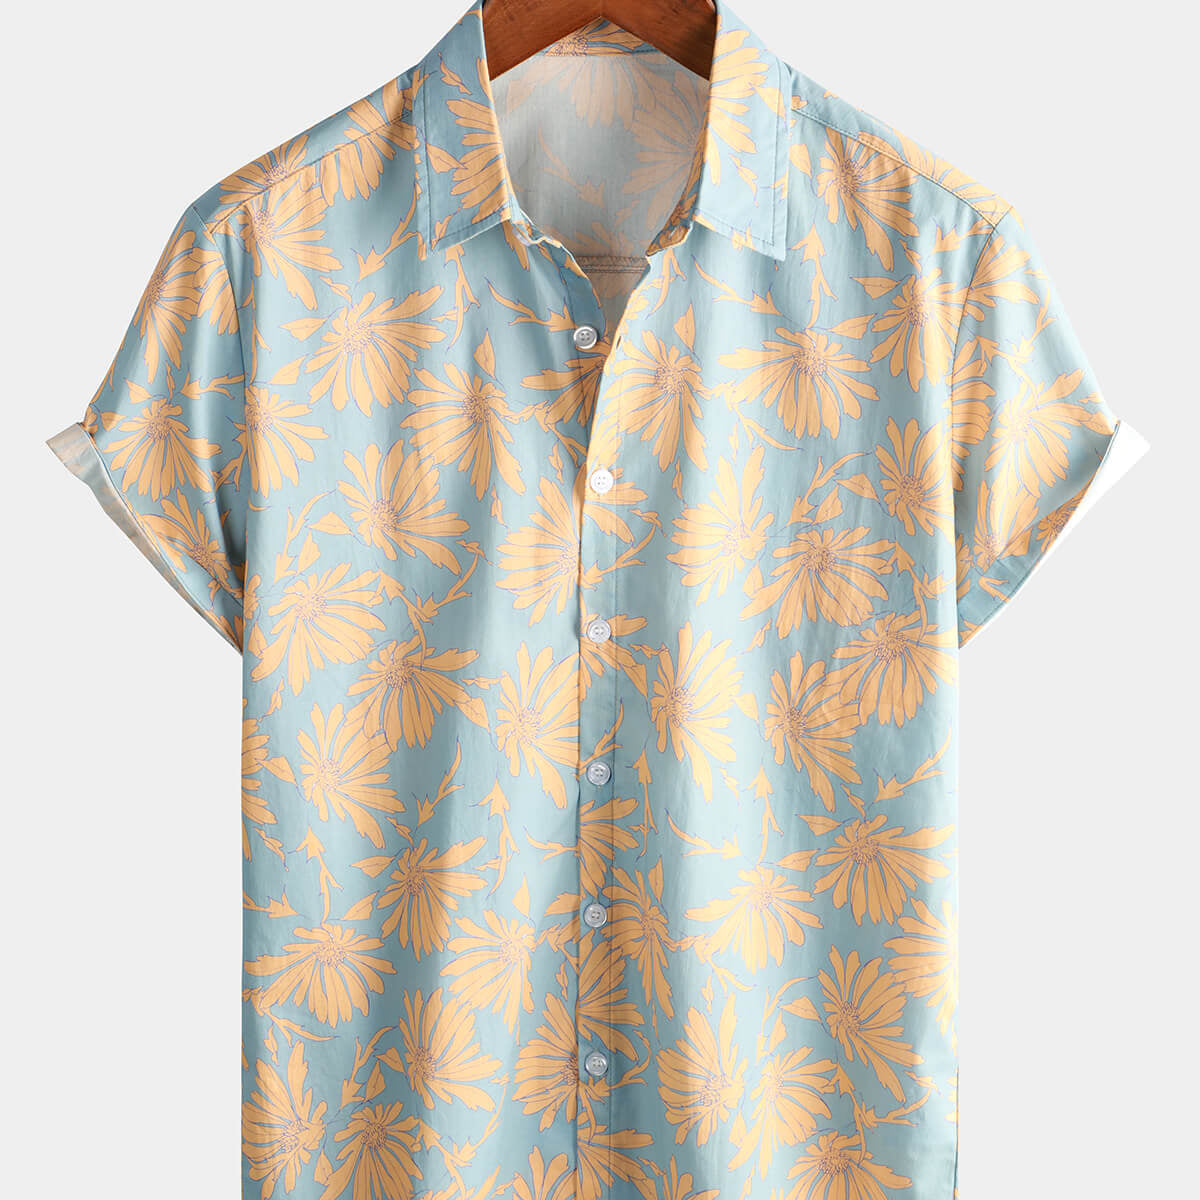 Men's Floral Hawaiian Short Sleeve Button Up Summer Shirt